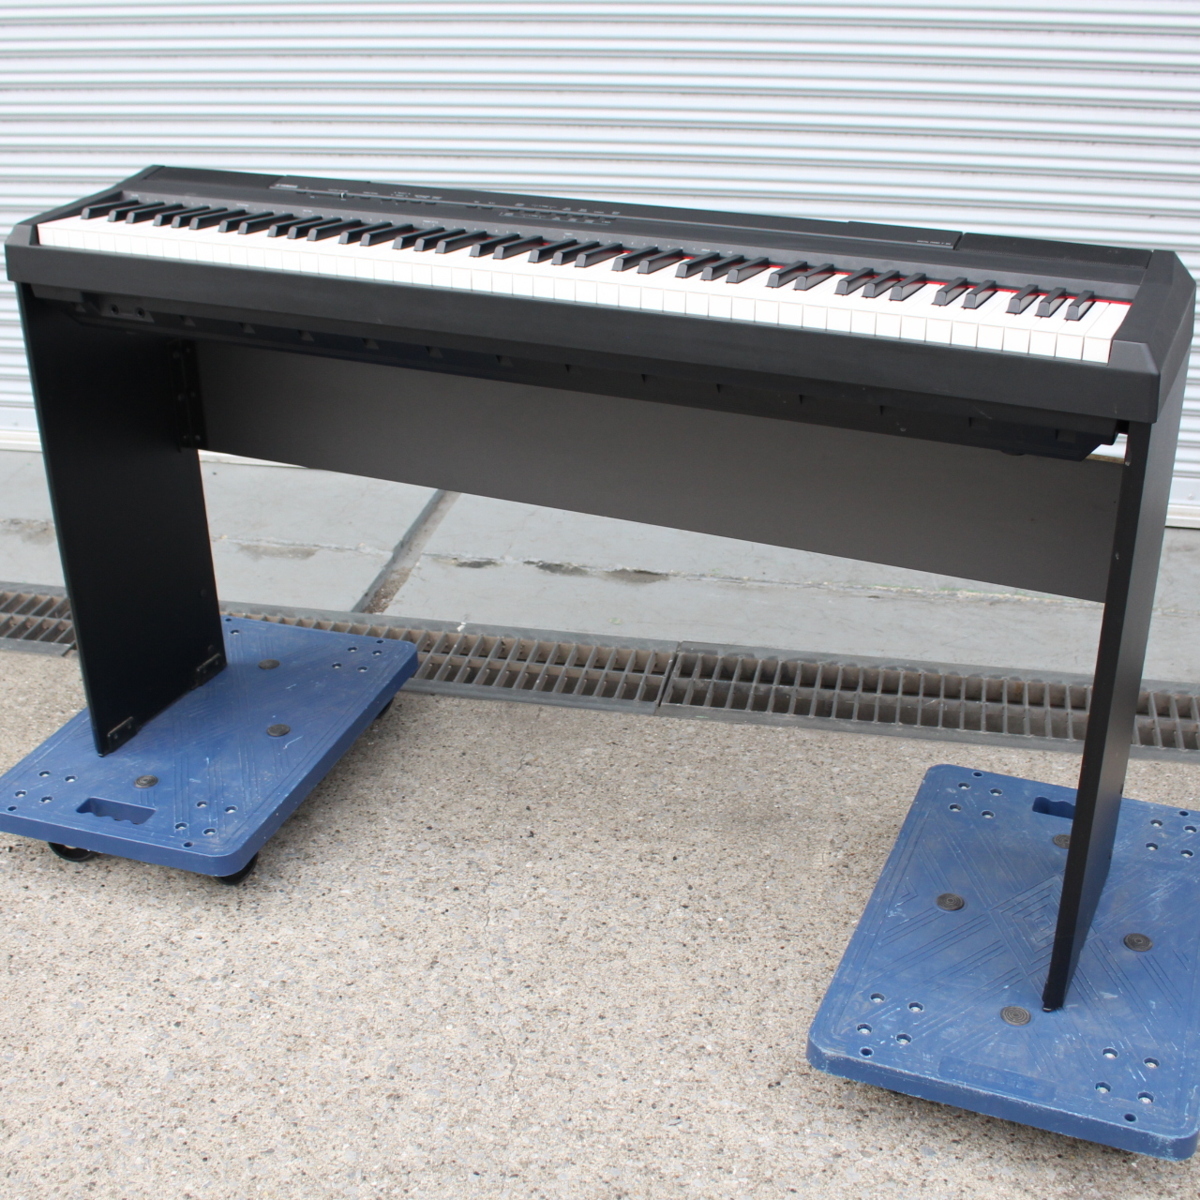 東京都大田区にて ヤマハ 電子ピアノ P-105B 2012年製 を出張買取させて頂きました。